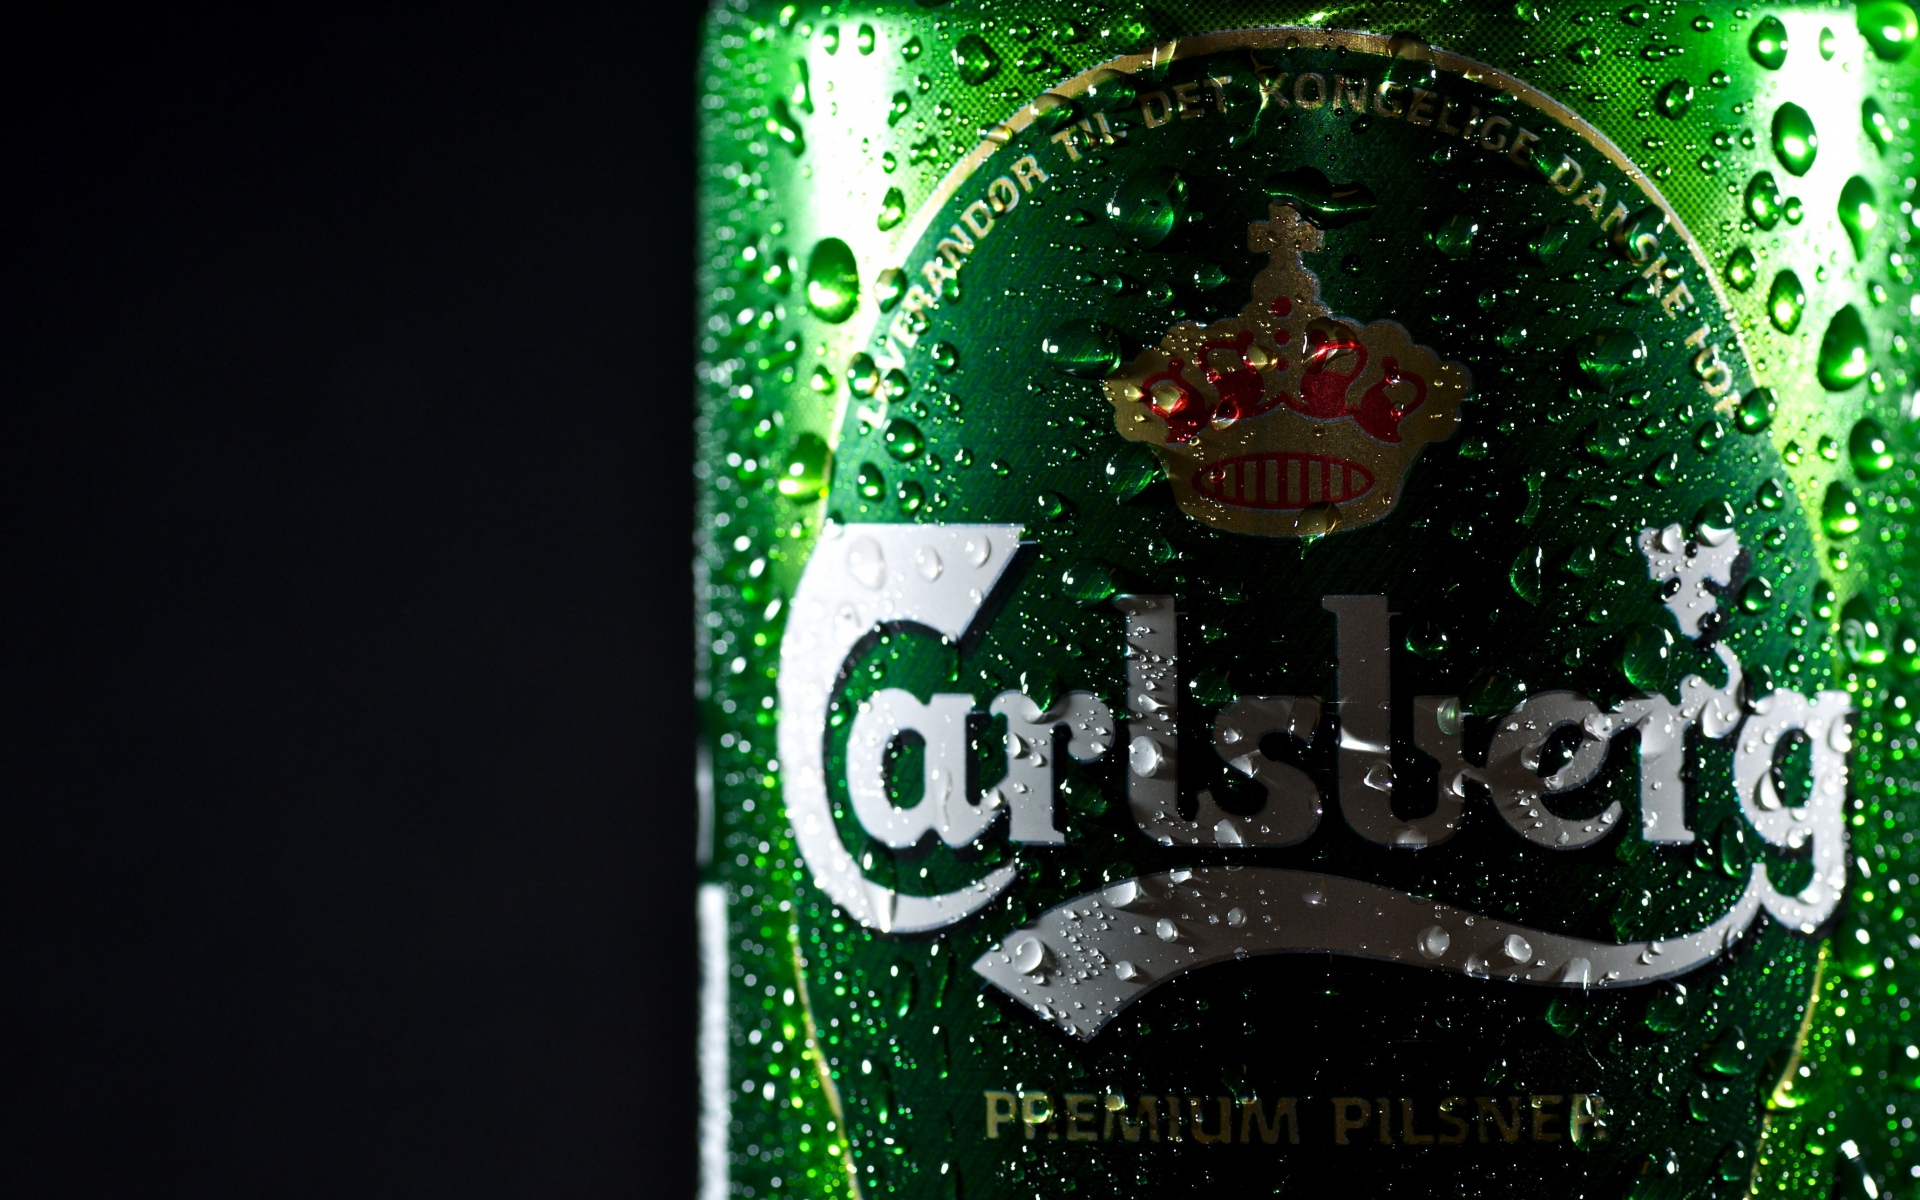 Картинки Carlsberg, пиво, бренд, капли, банк фото и обои на рабочий стол